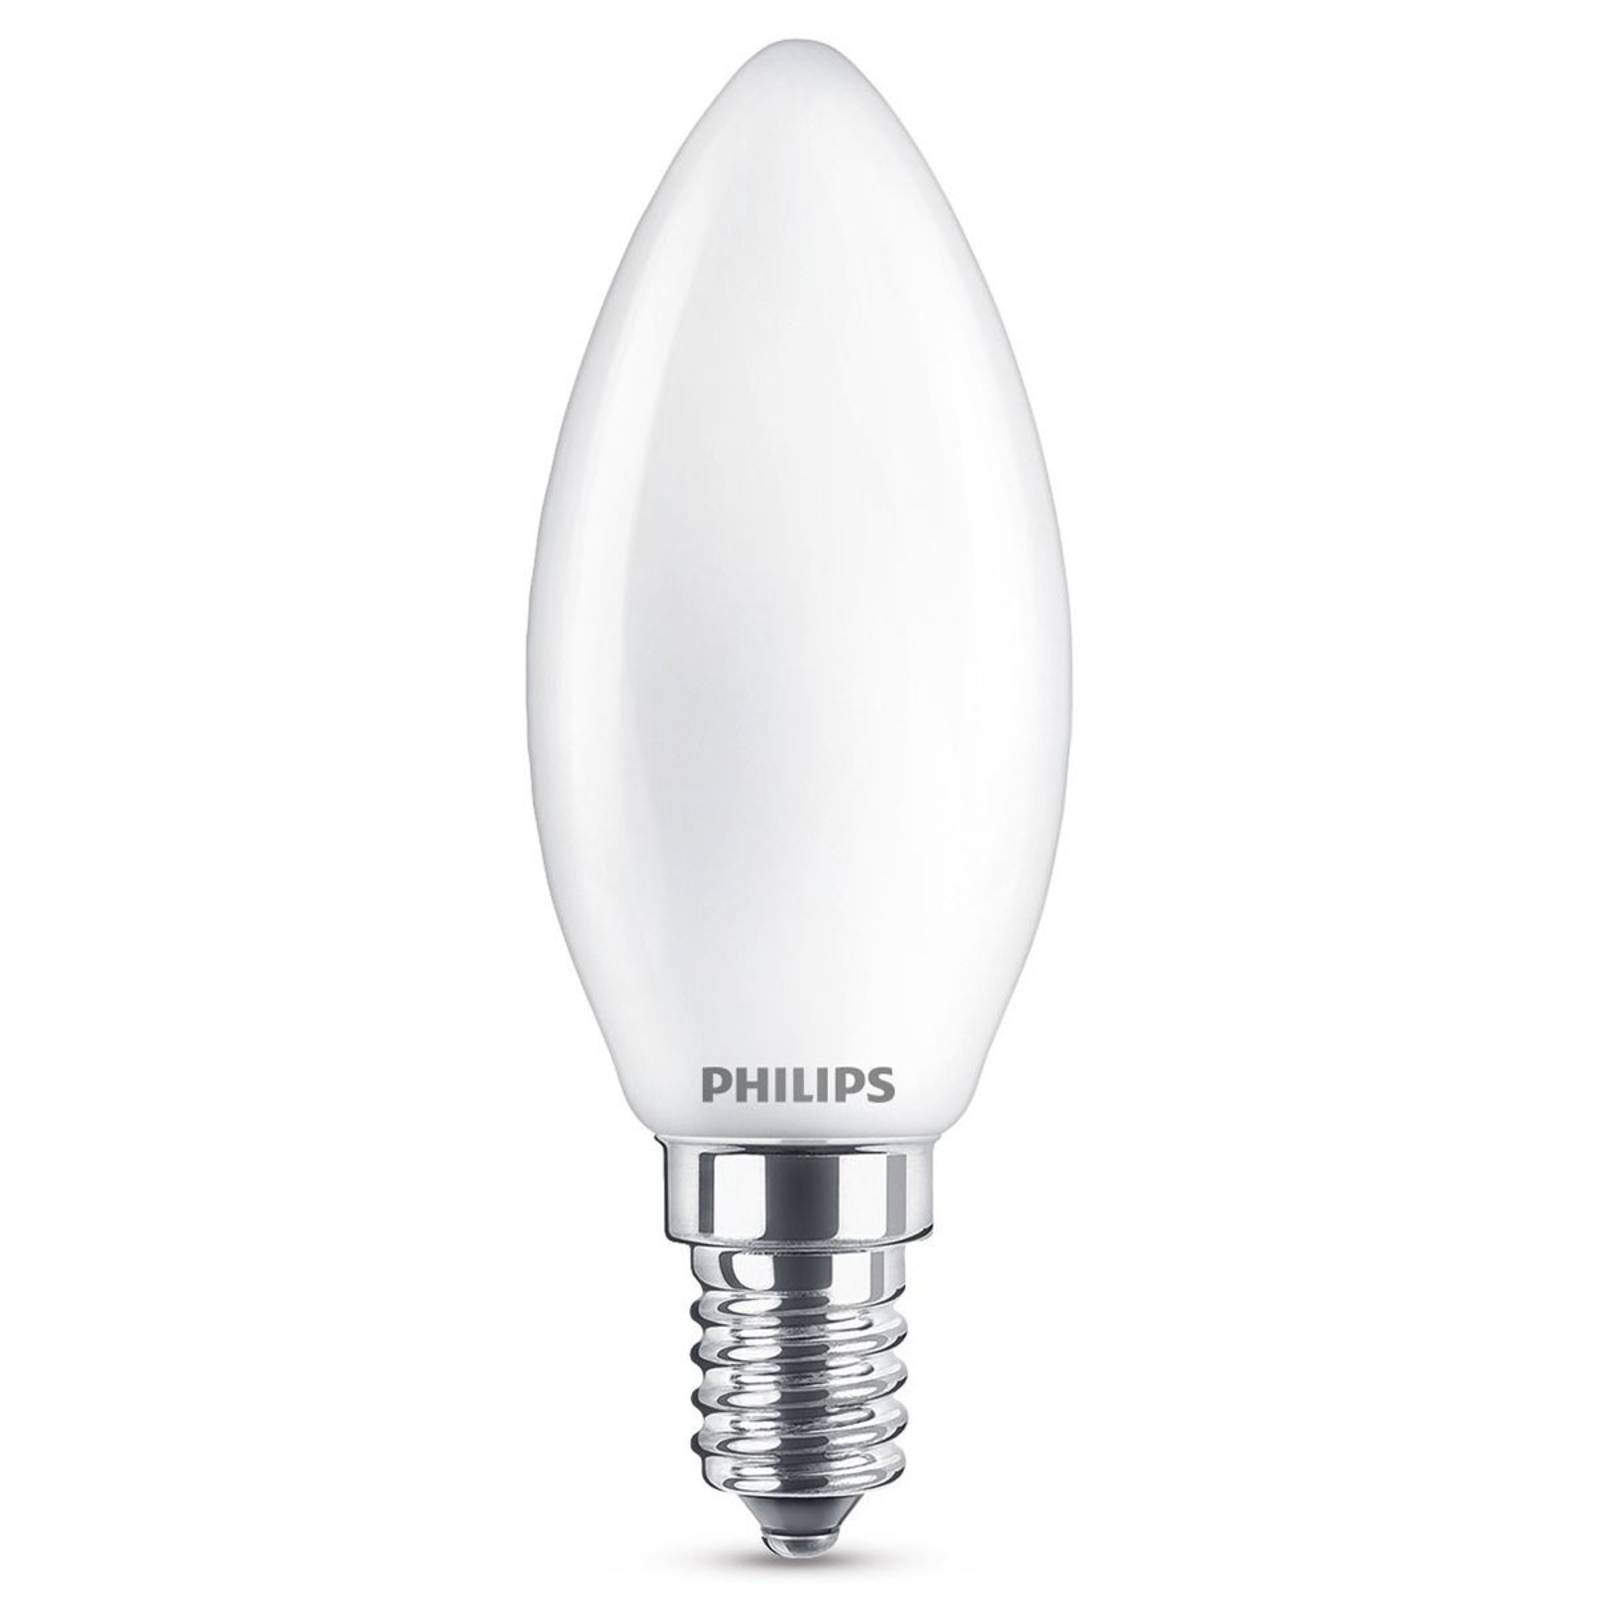 Zdjęcia - Żarówka Philips  świeca E14 B35 4,3W 827 opalowa 